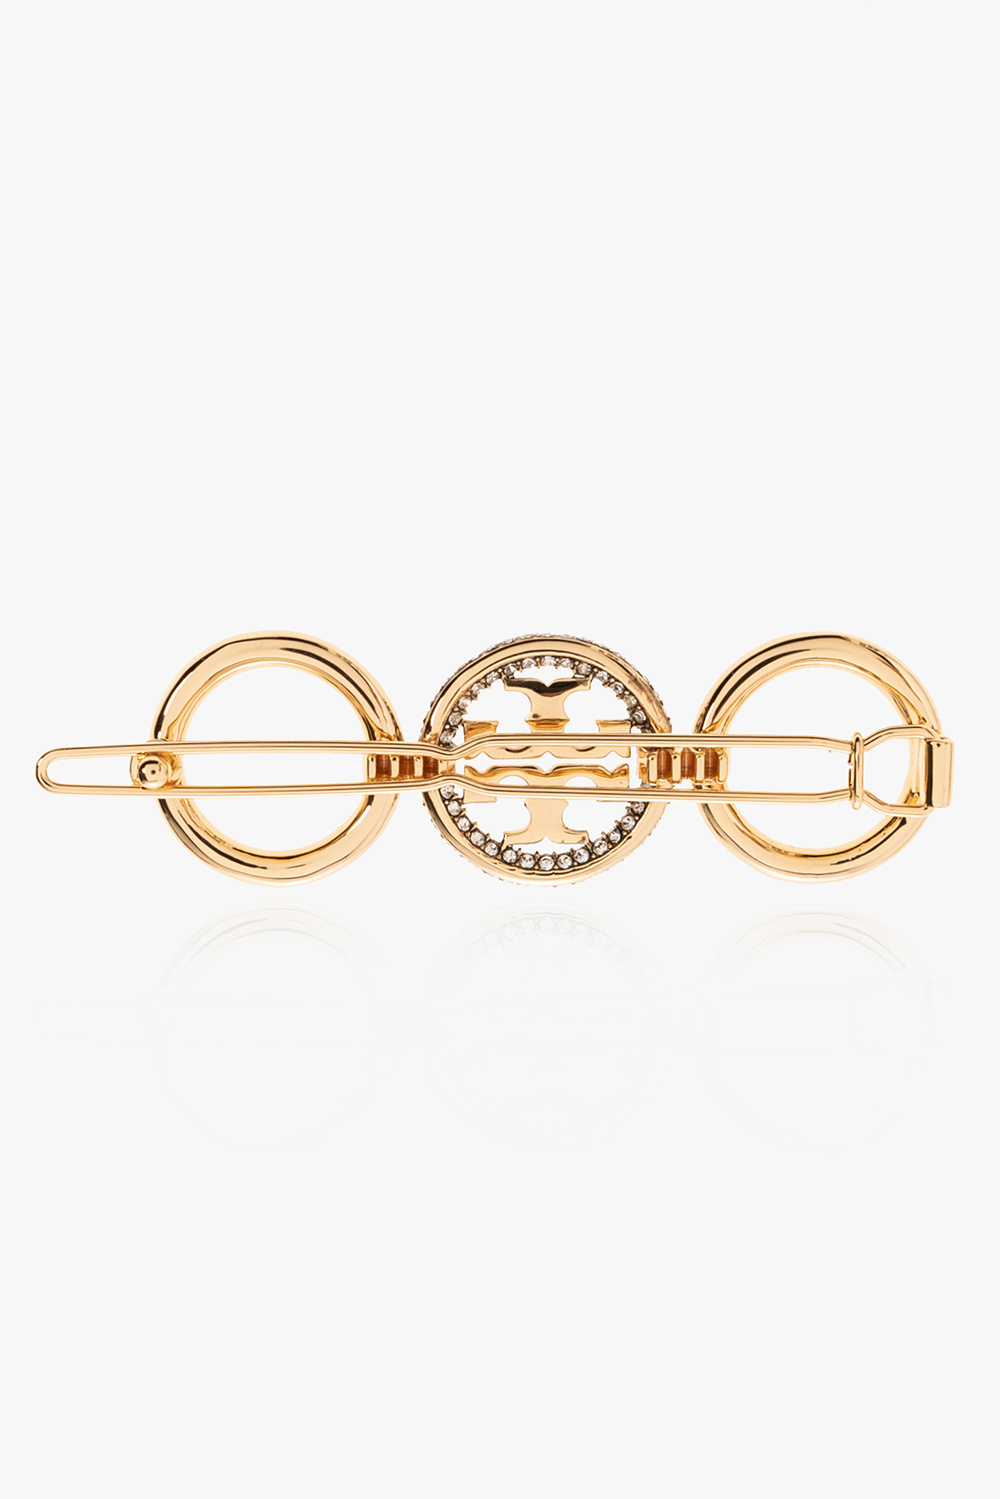 Tory Burch ‘Miller’ brass hair clip